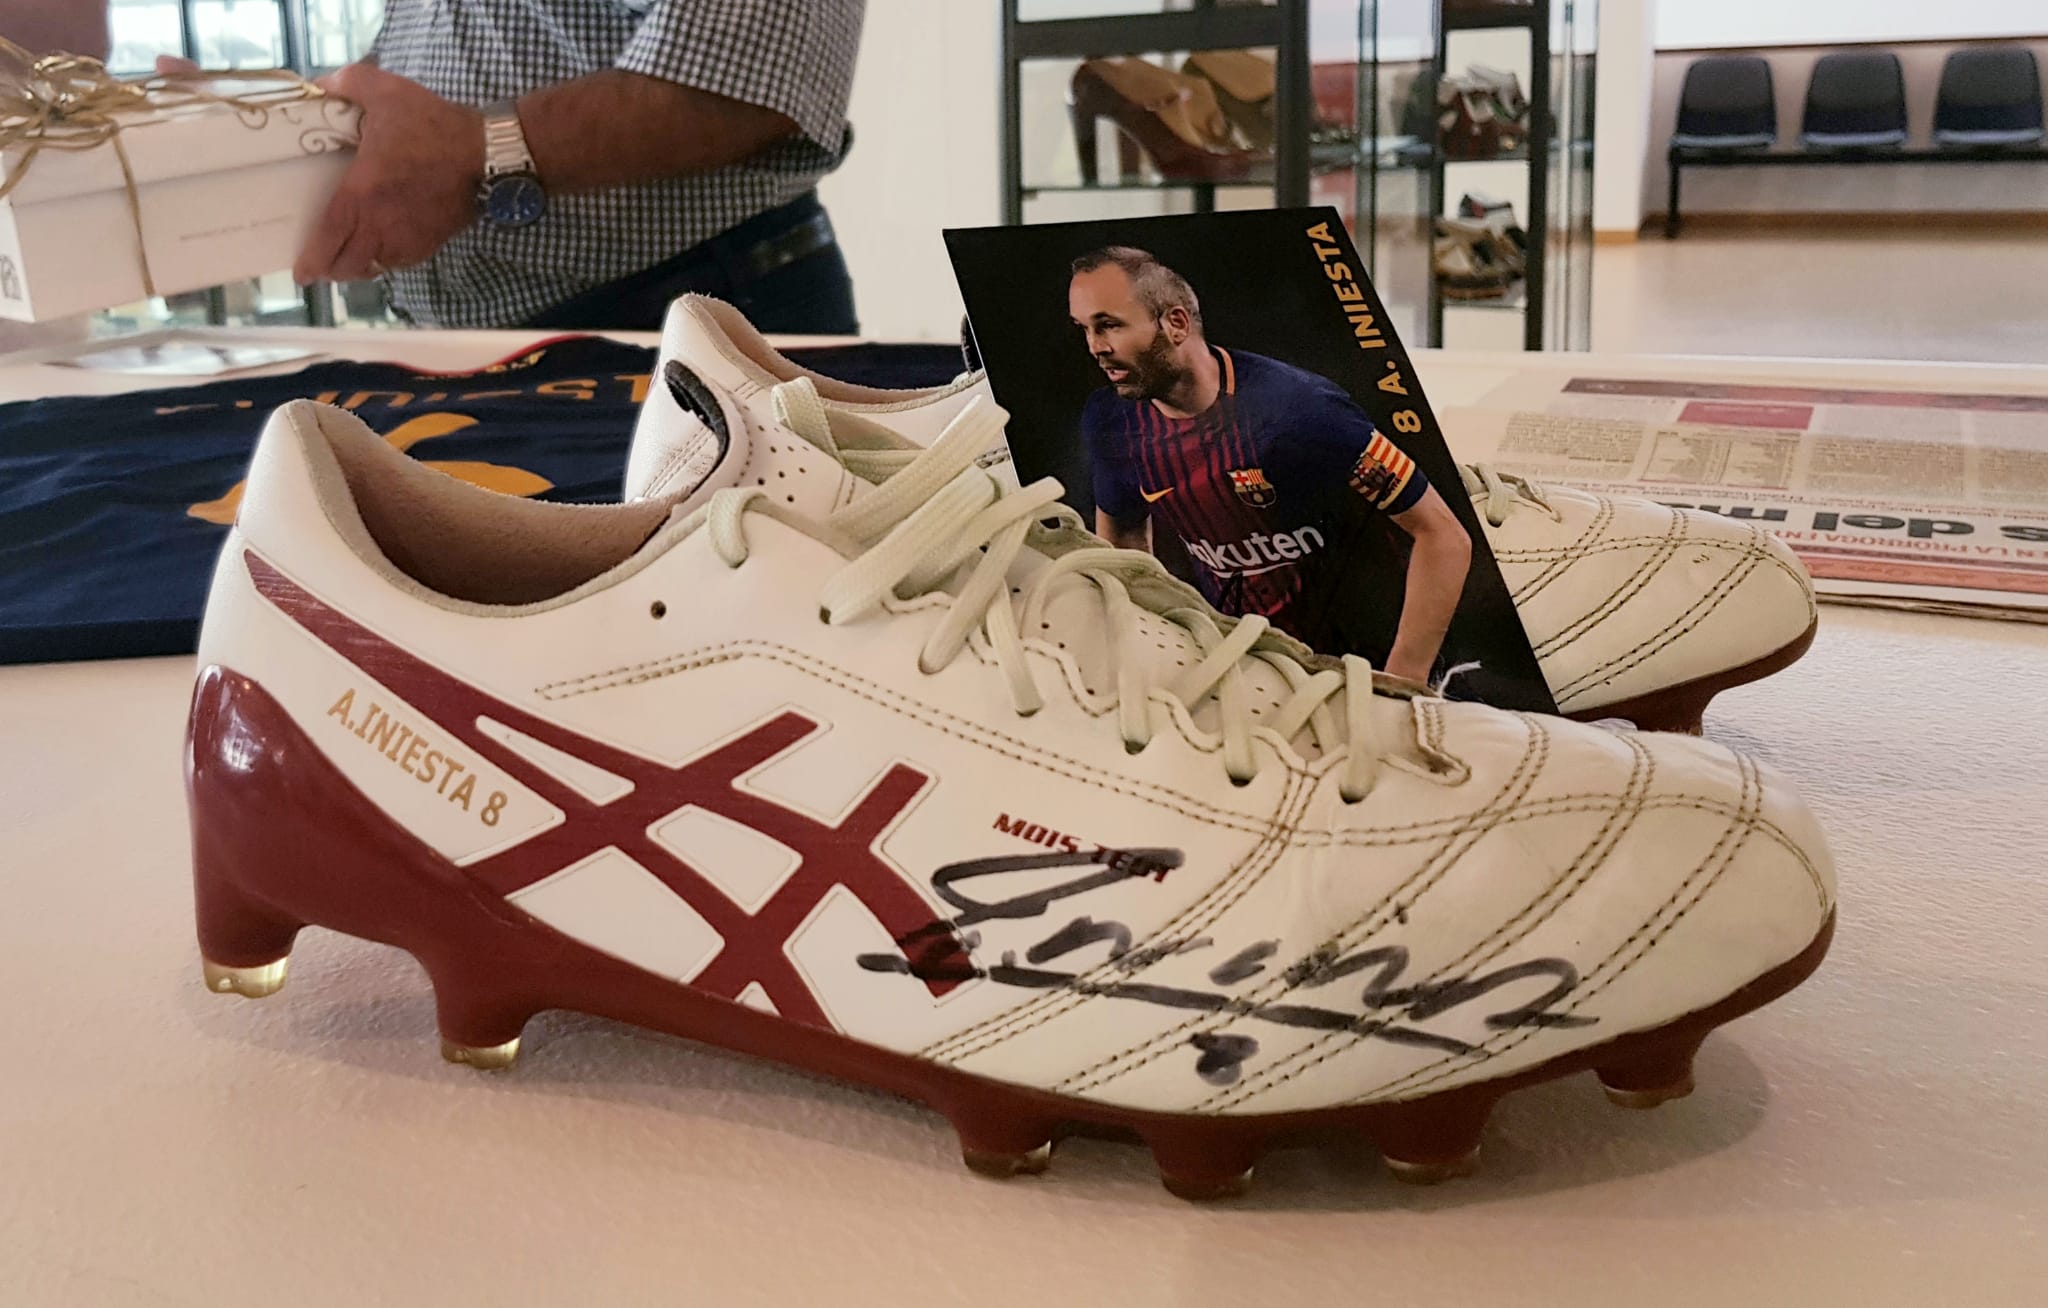 El Museo del Calzado de Elda ya cuenta con las botas de fútbol de Andrés Iniesta dentro de su colección de ‘Zapato con Historia’